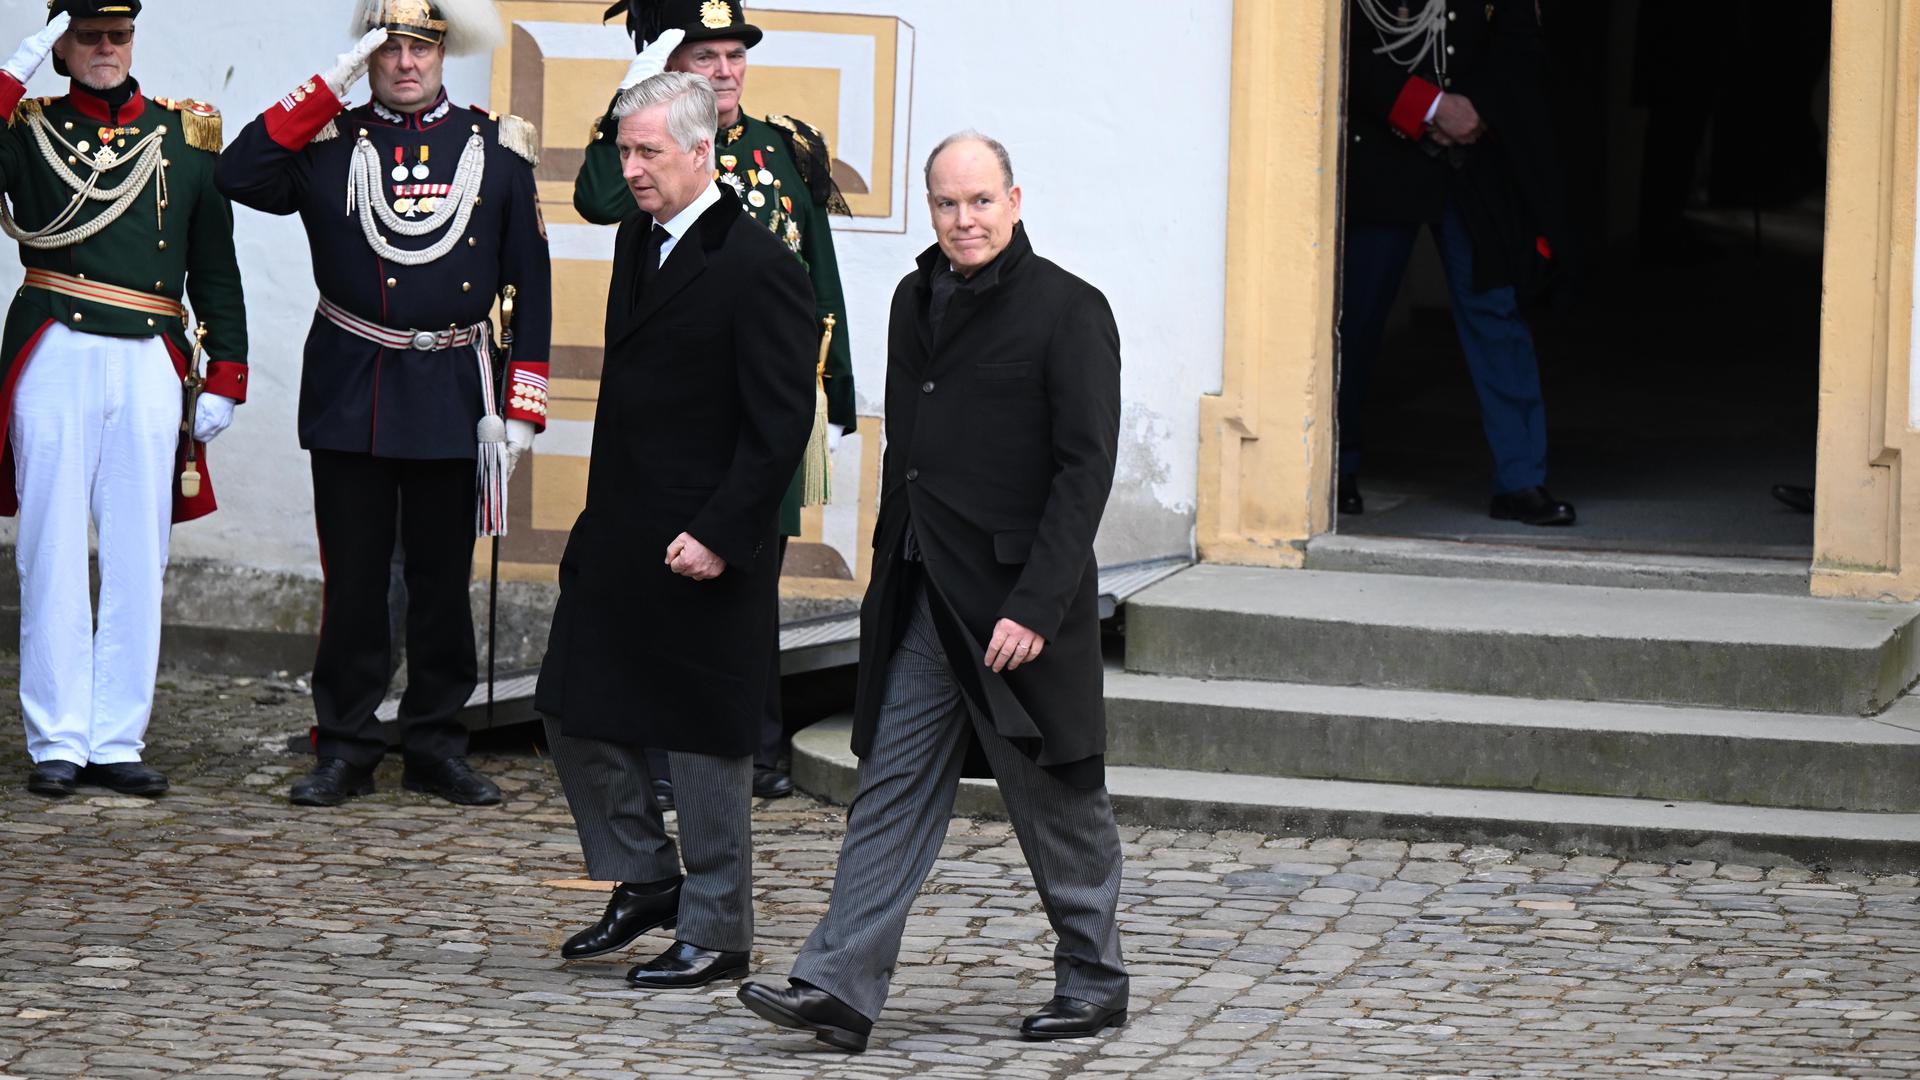 König Philippe von Belgien und Fürst Albert II. von Monaco (rechts) kommen zu der Trauerfeier von Max Markgraf von Baden. Die Trauerfeier ist für den Familienkreis, befreundete Häuser sowie Vertreter aus Politik, Wirtschaft und Kultur gedacht.